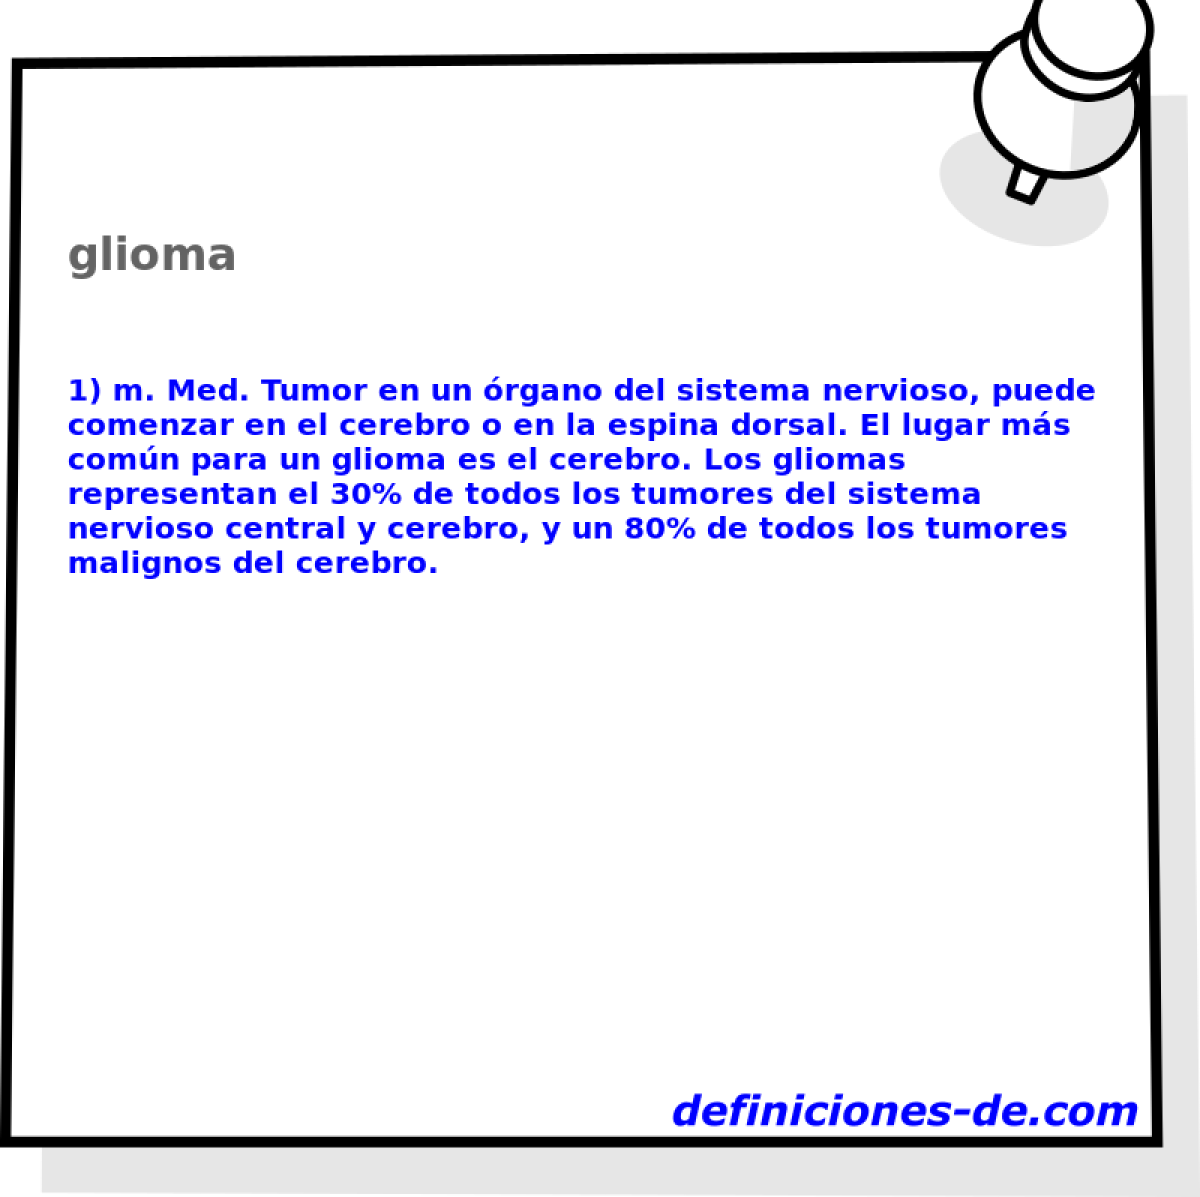 glioma 